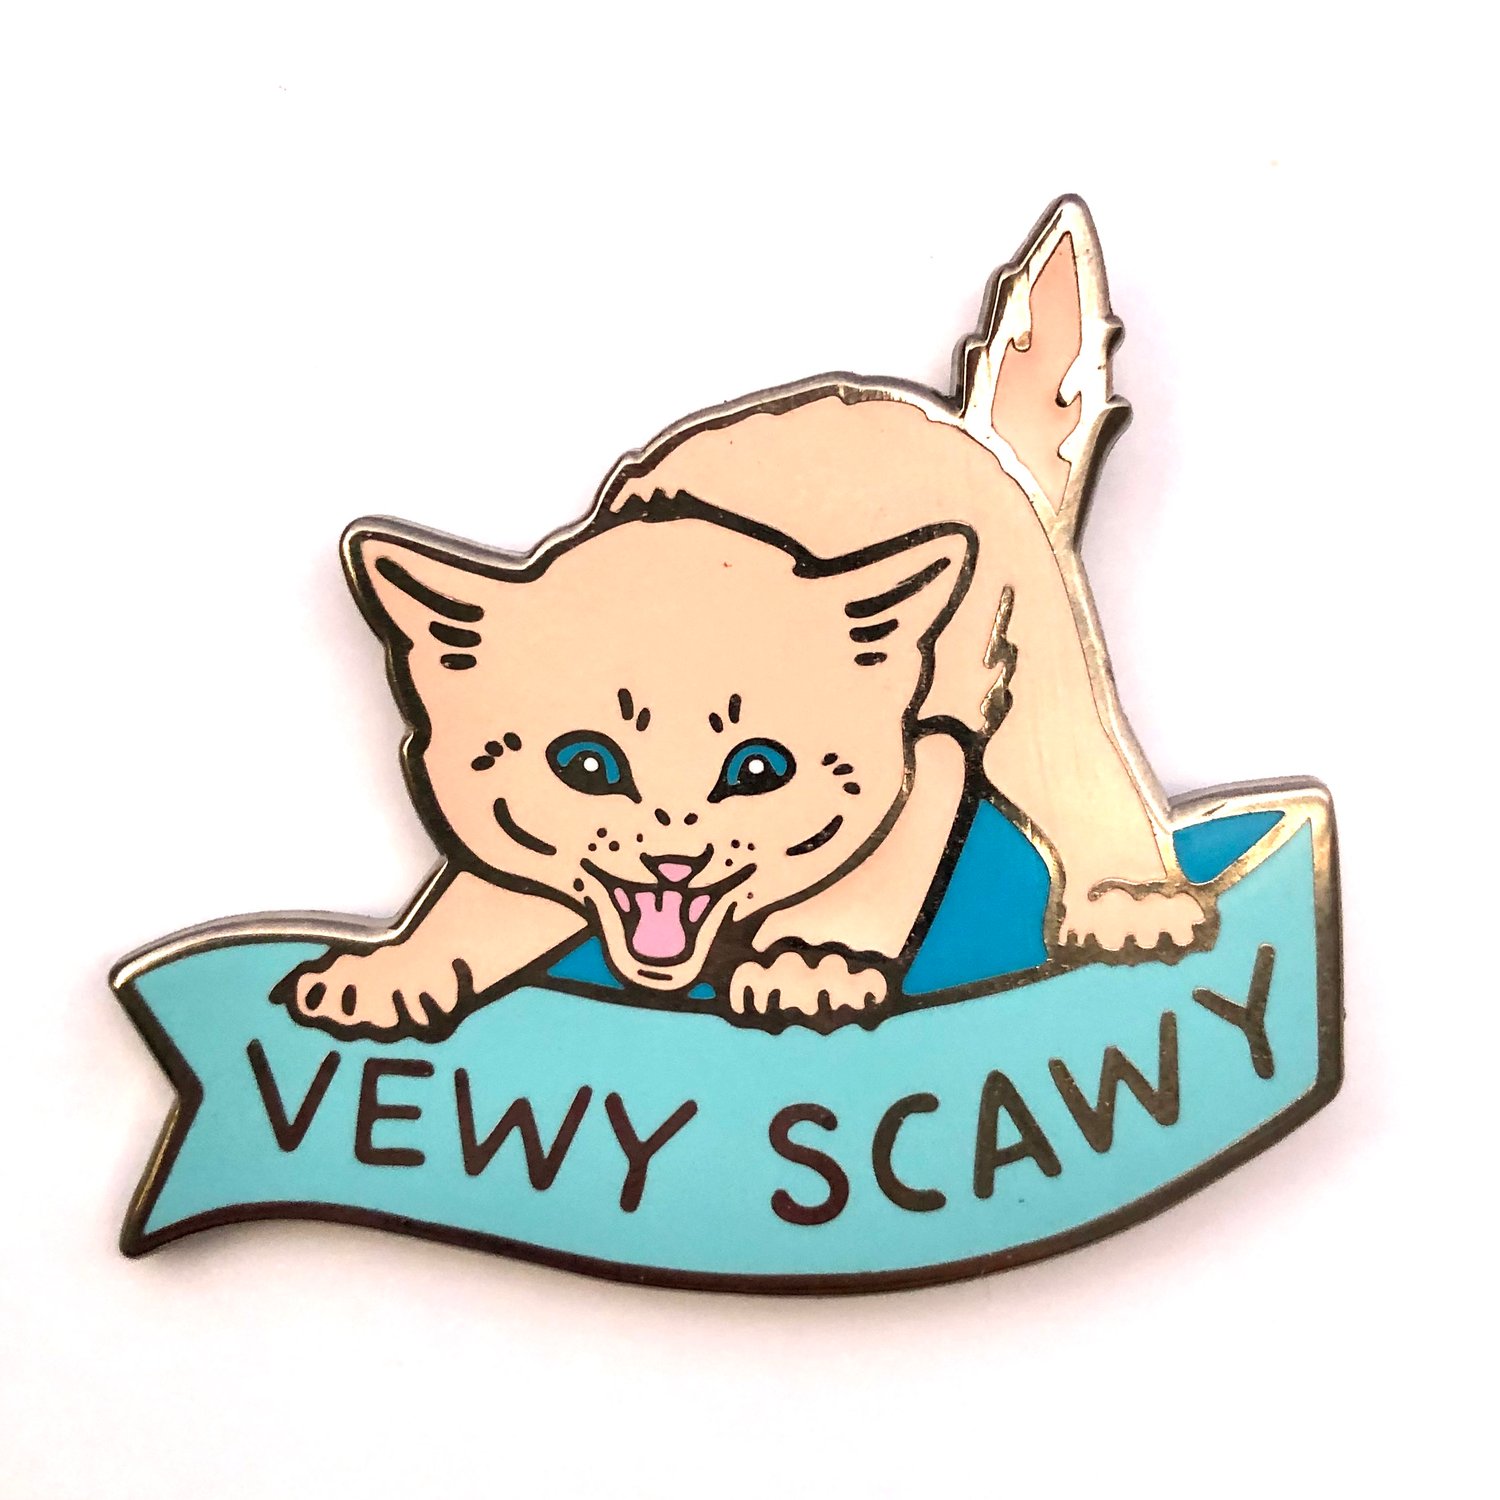 Image of Vewy Scawy Kitten Pin